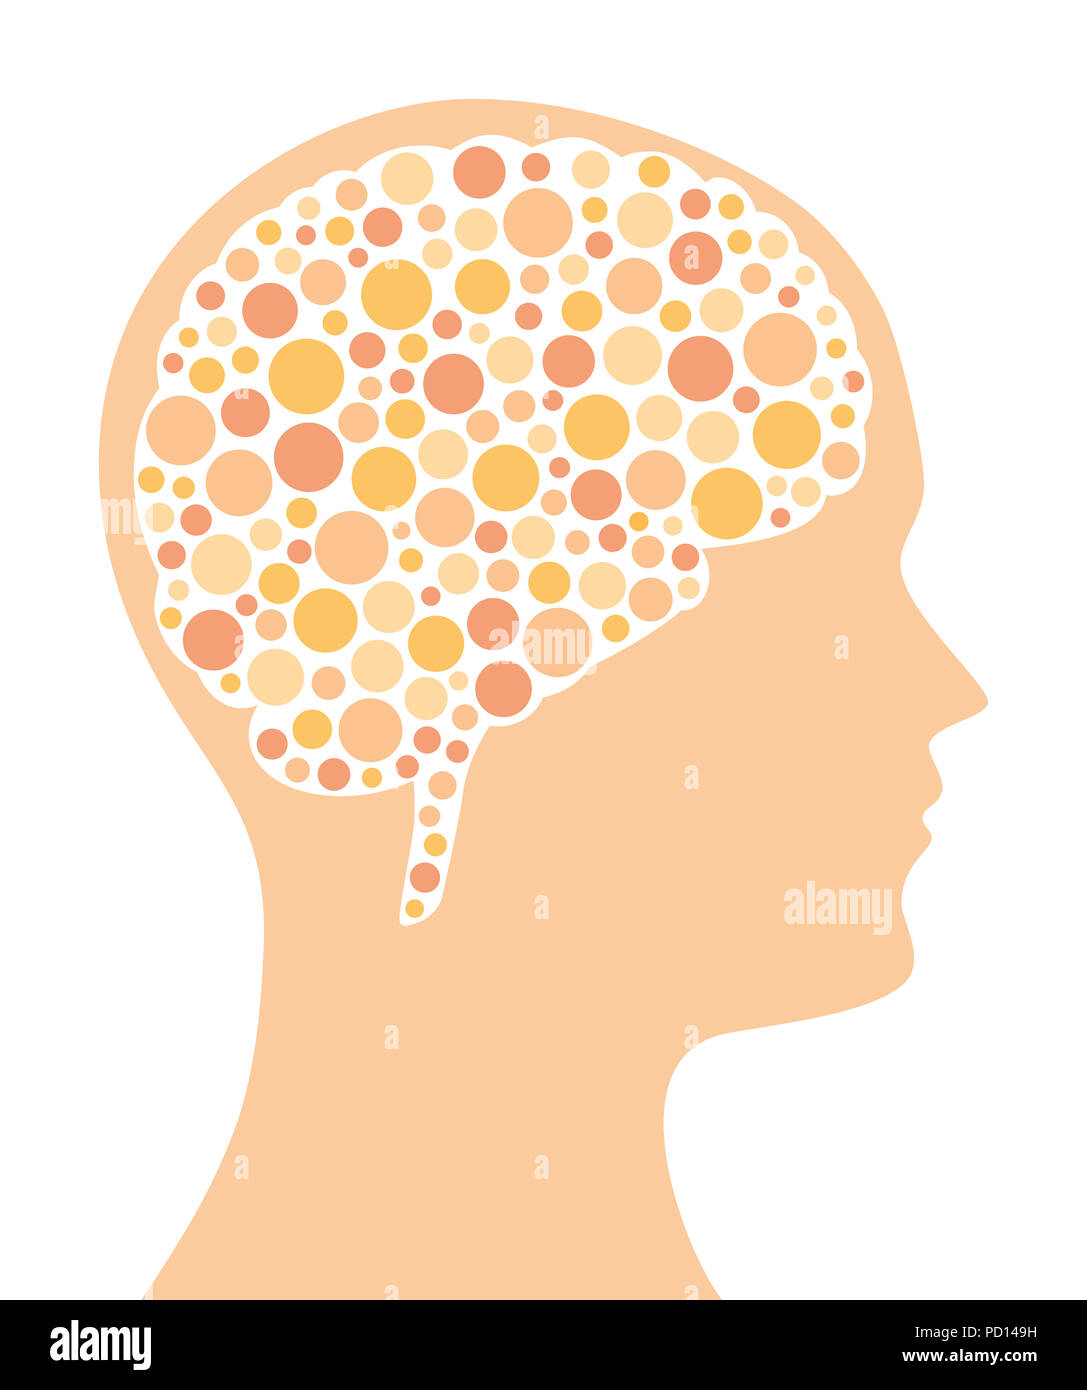 Viele farbige Punkte in einem Gehirn Form und der Silhouette des Kopfes. Gepunkteten Muster. Ein Symbol für Ideen, Denken, Fantasie und Kreativität. Stockfoto